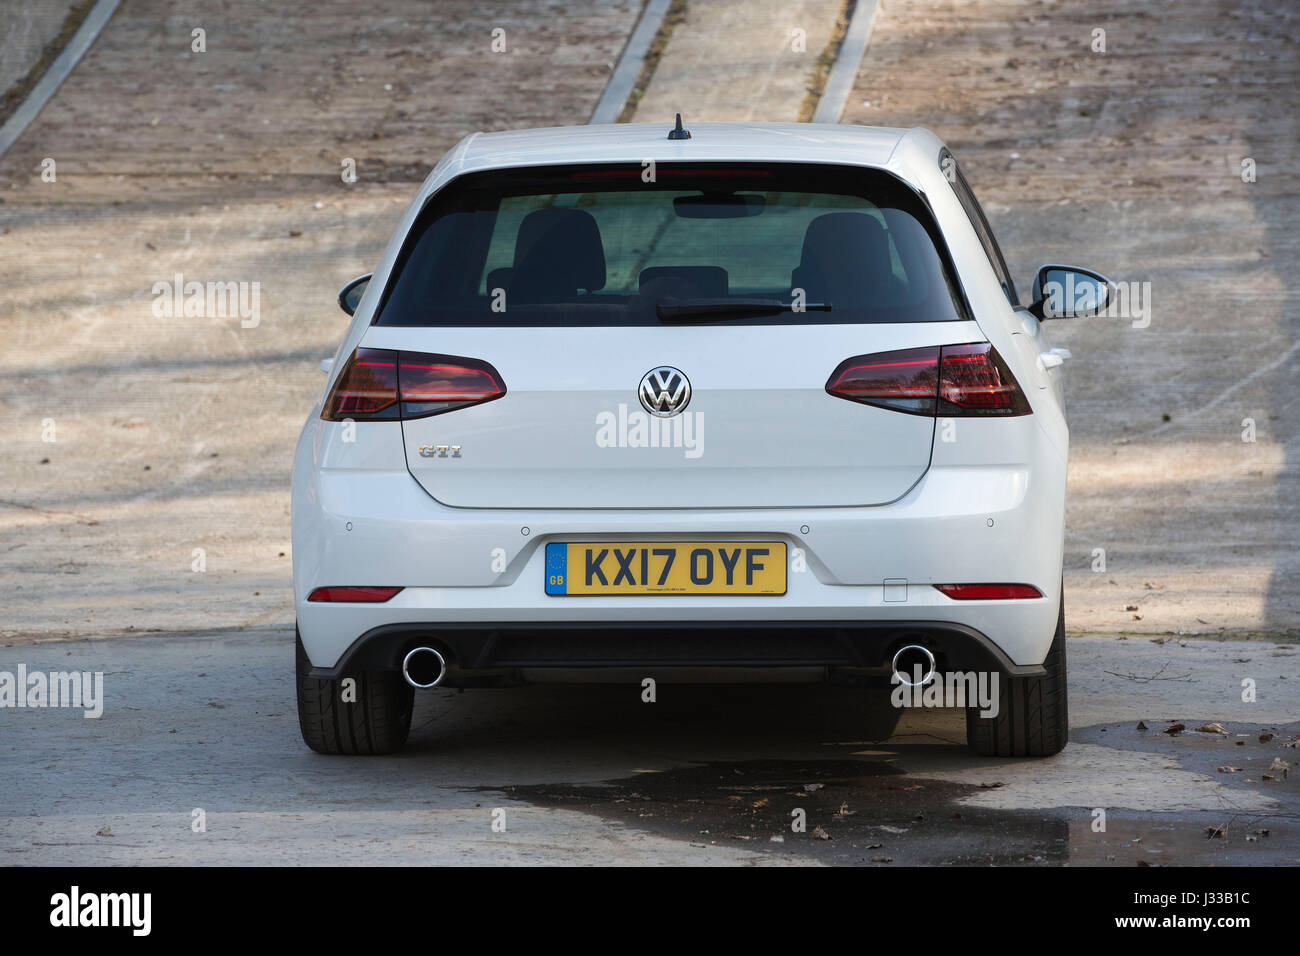 Volkswagen Golf GTI Mk7 built in 2017 being tested at Longcross Testing ...